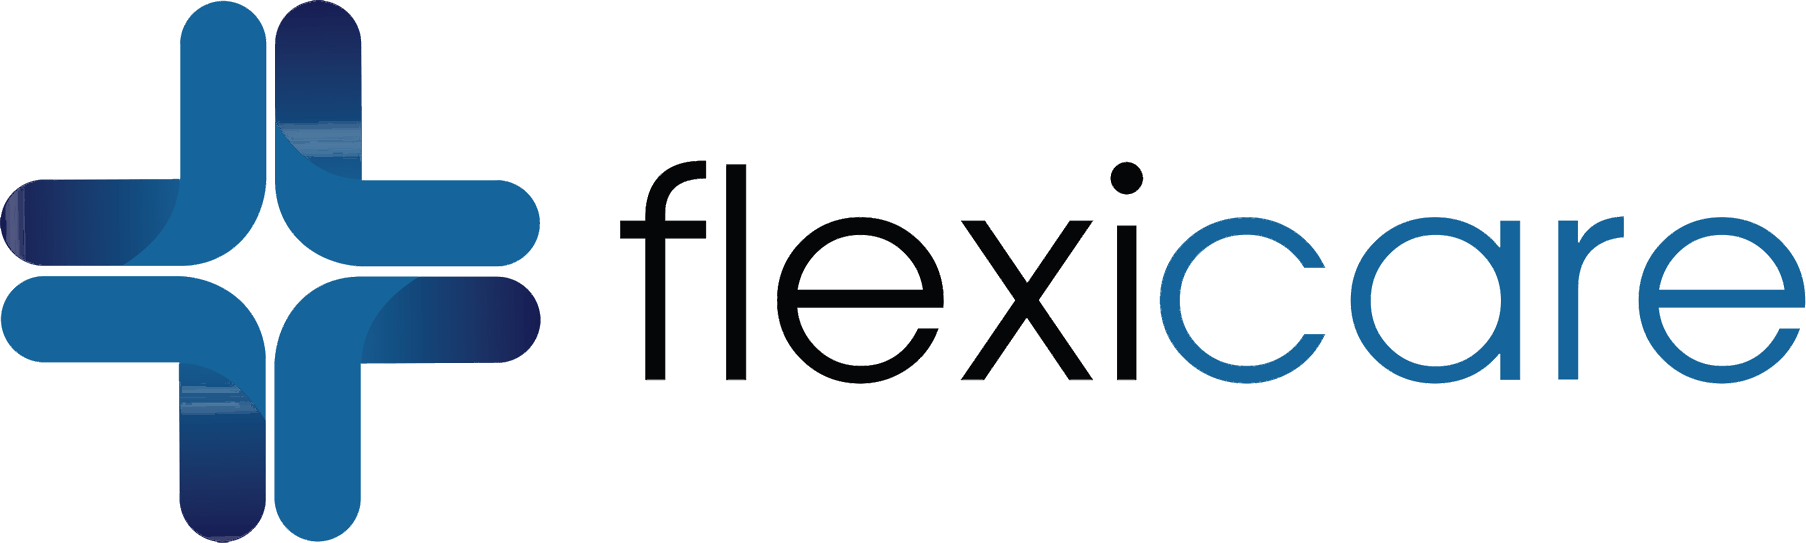 flexicare-logo